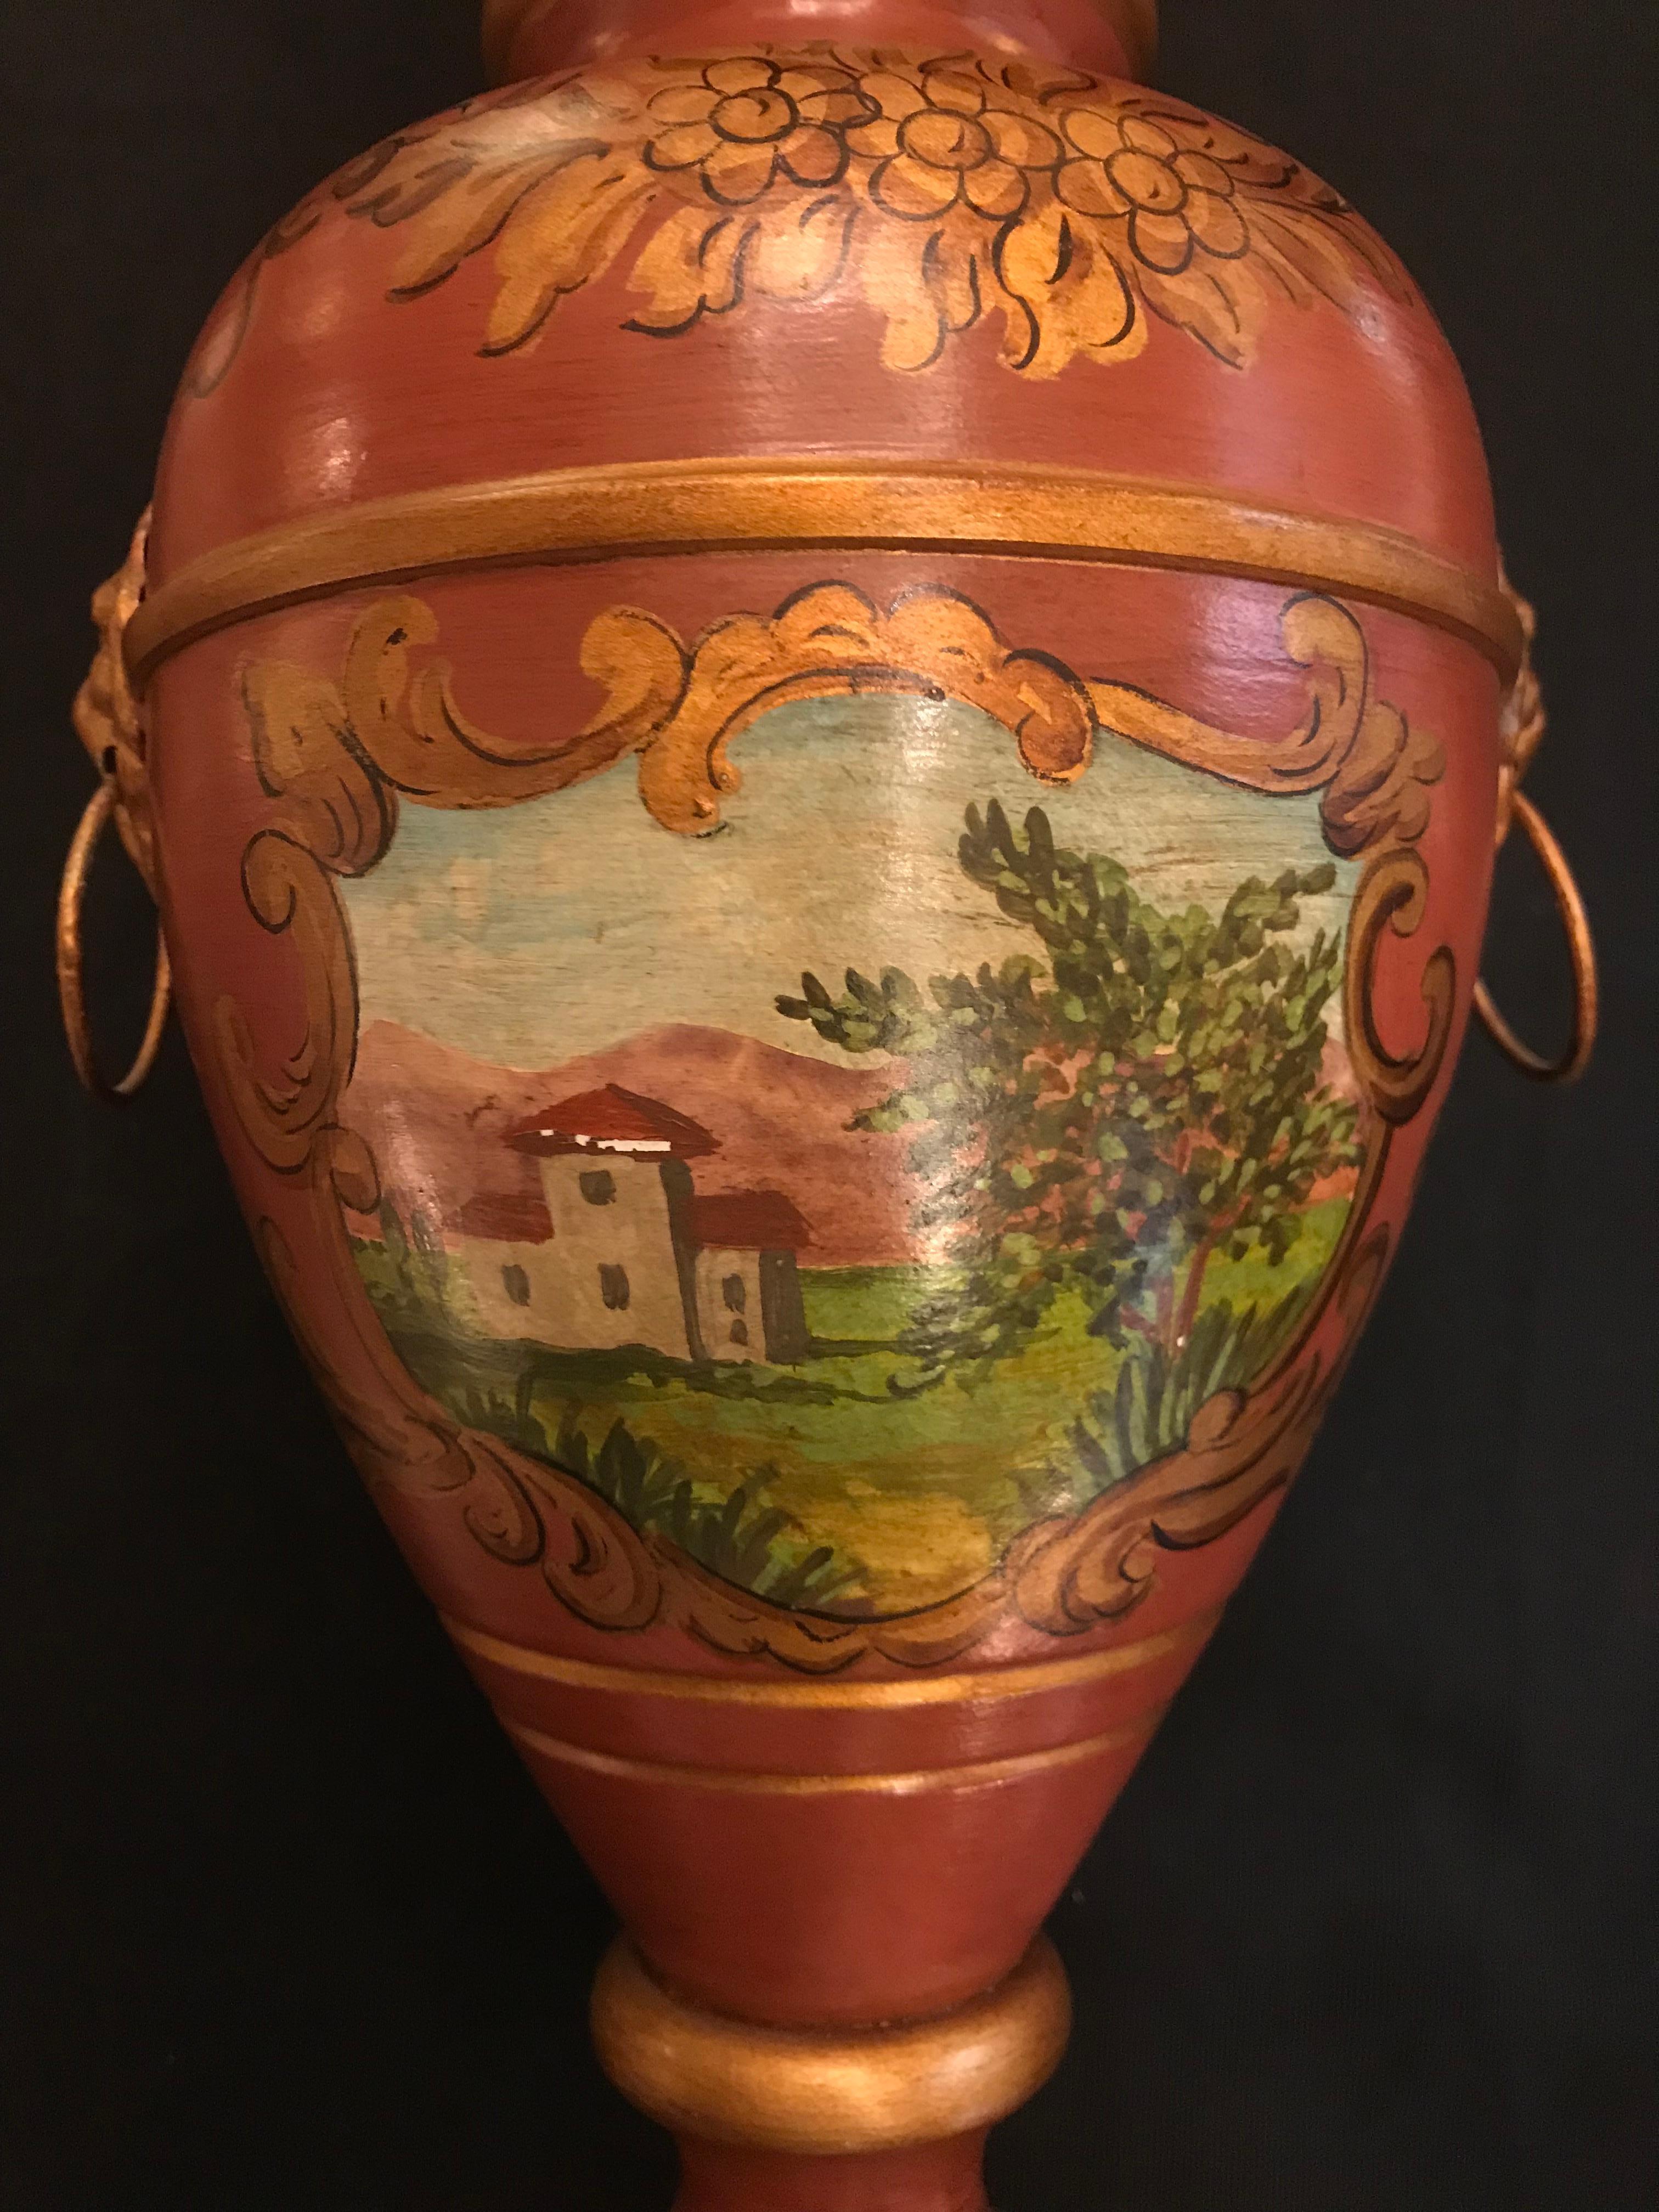 Exquisite Tole-Lampe im englischen Stil von Gherardo Degli Albizzi mit vasenförmigem, quadratischem Sockel und handgemalter neoklassizistischer Dekoration im gesamten Bereich. Der Sockel ist rundum mit handgemalten Blättern verziert, während auf dem